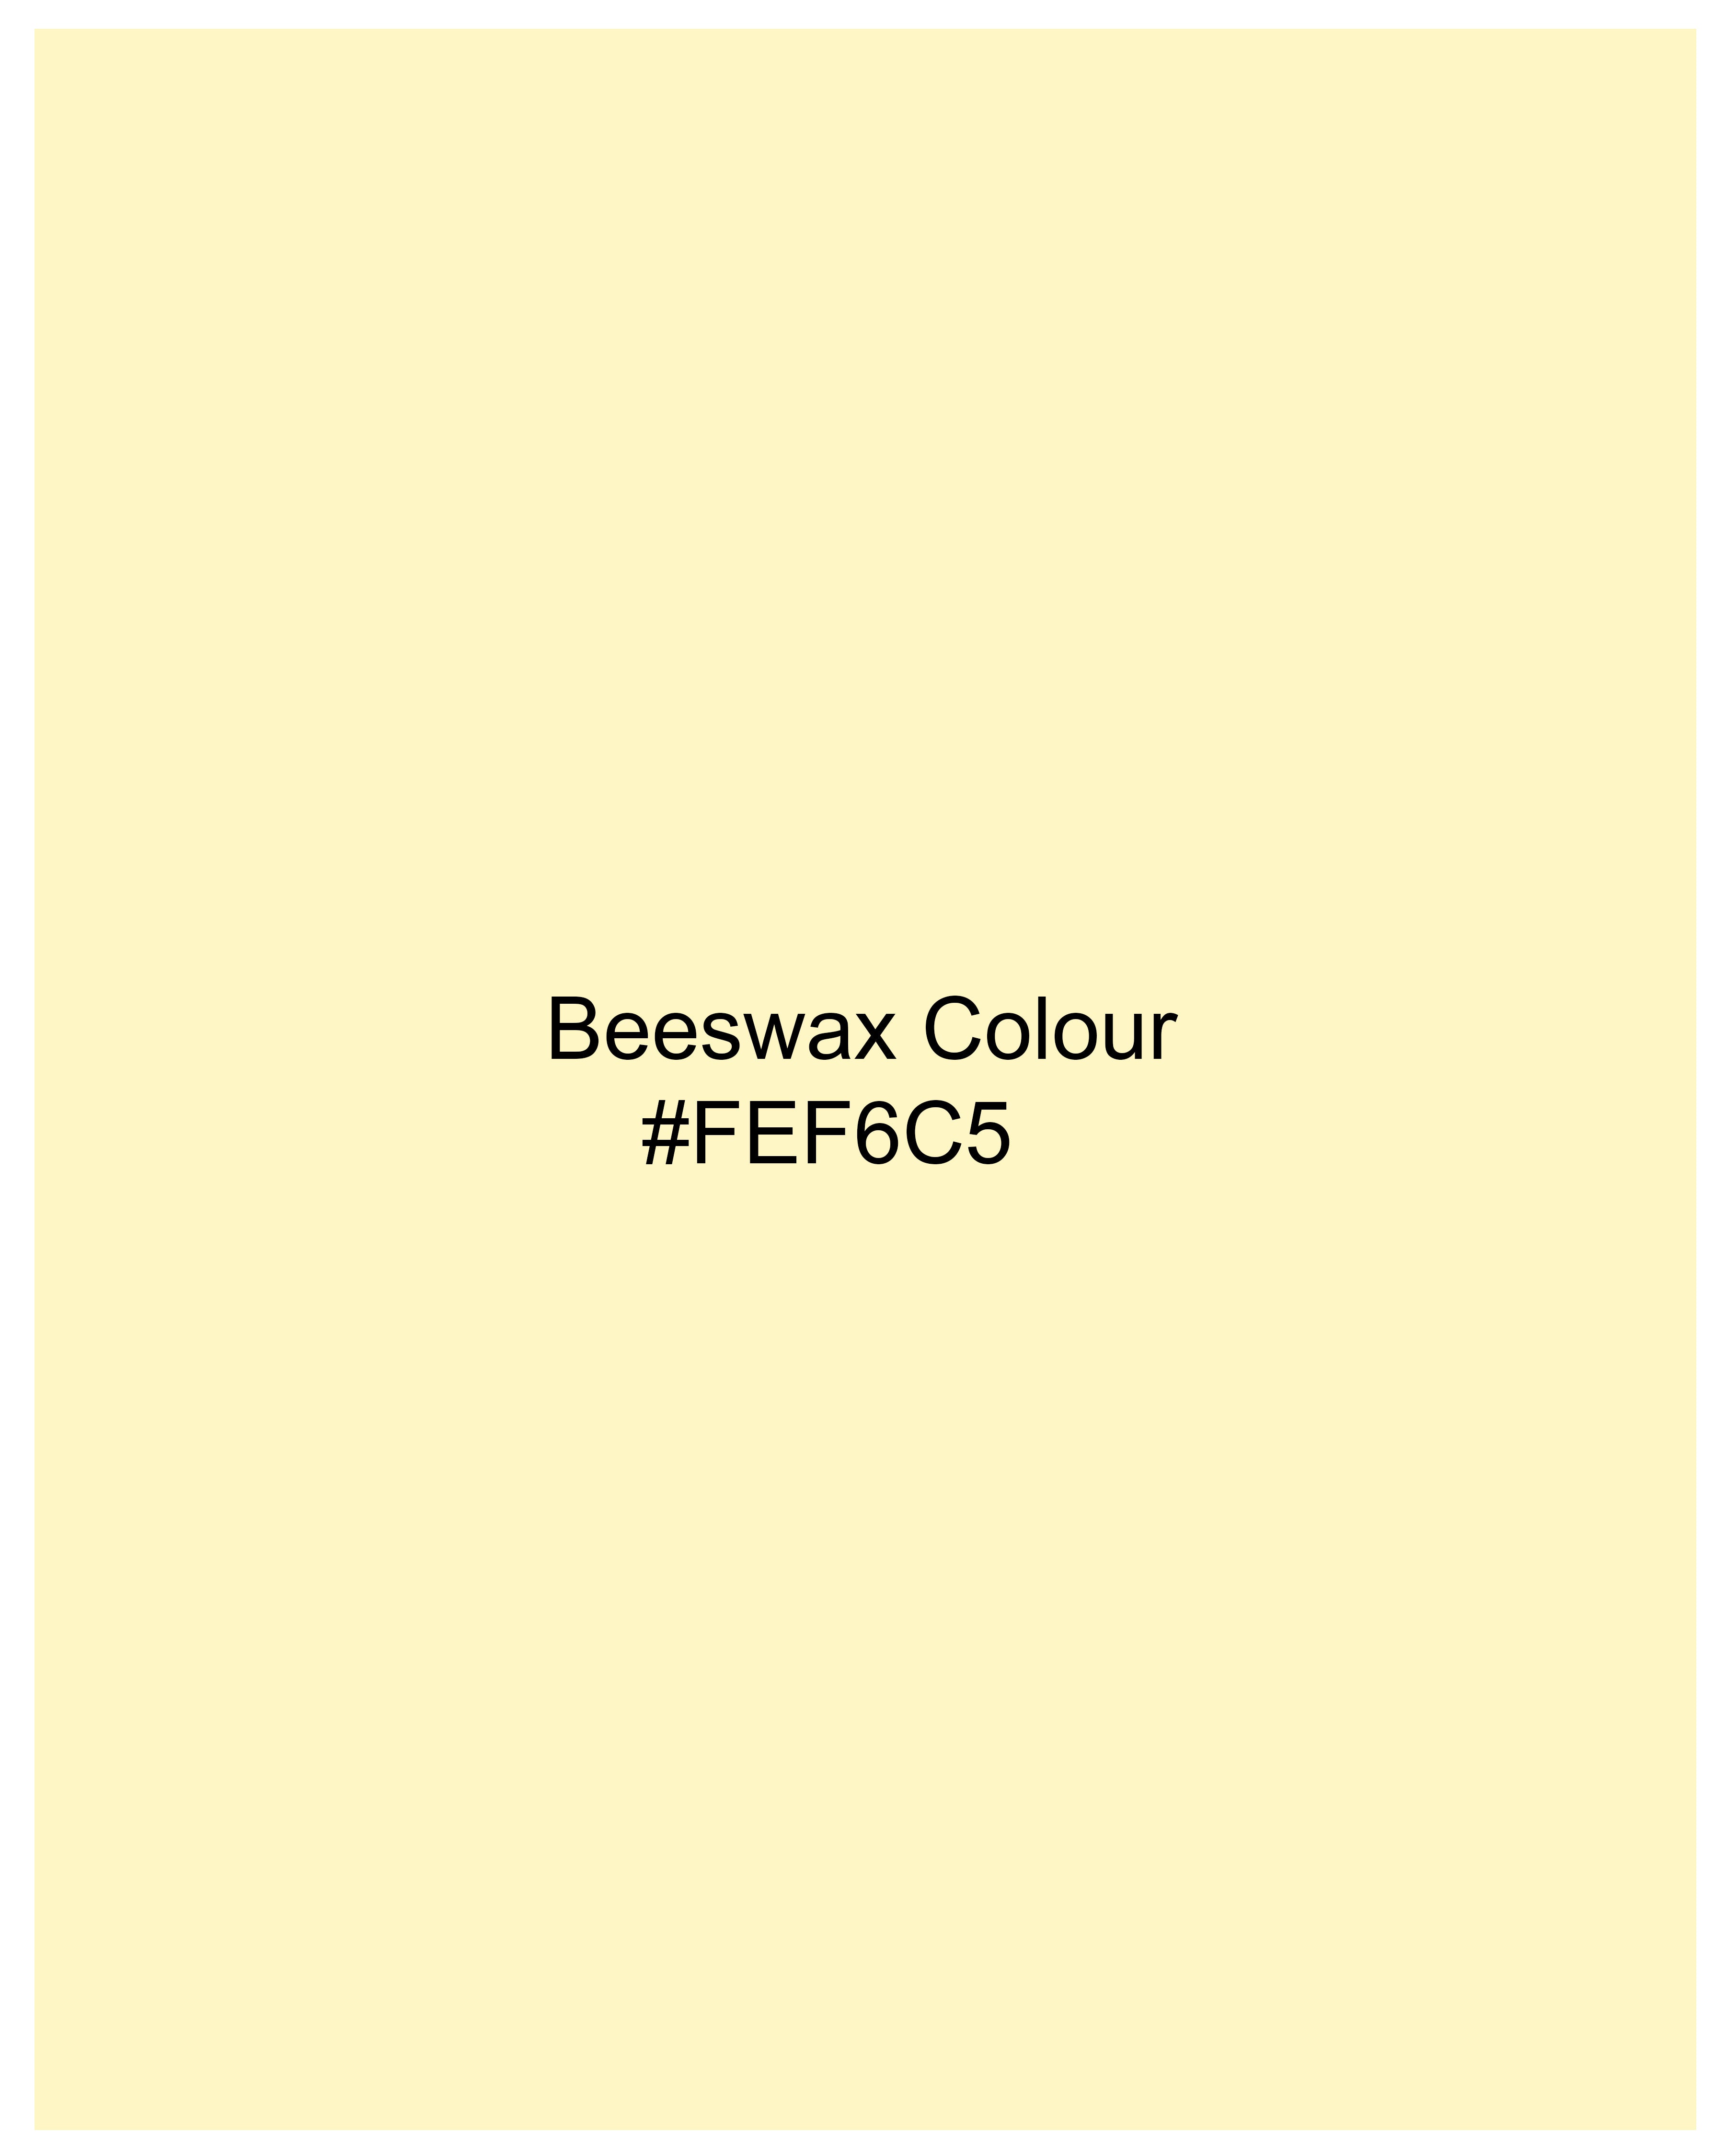 Beeswax Yellow Heavyweight Bomber Jacket TS629-38, TS629-39, TS629-40, TS629-42, TS629-44, TS629-46